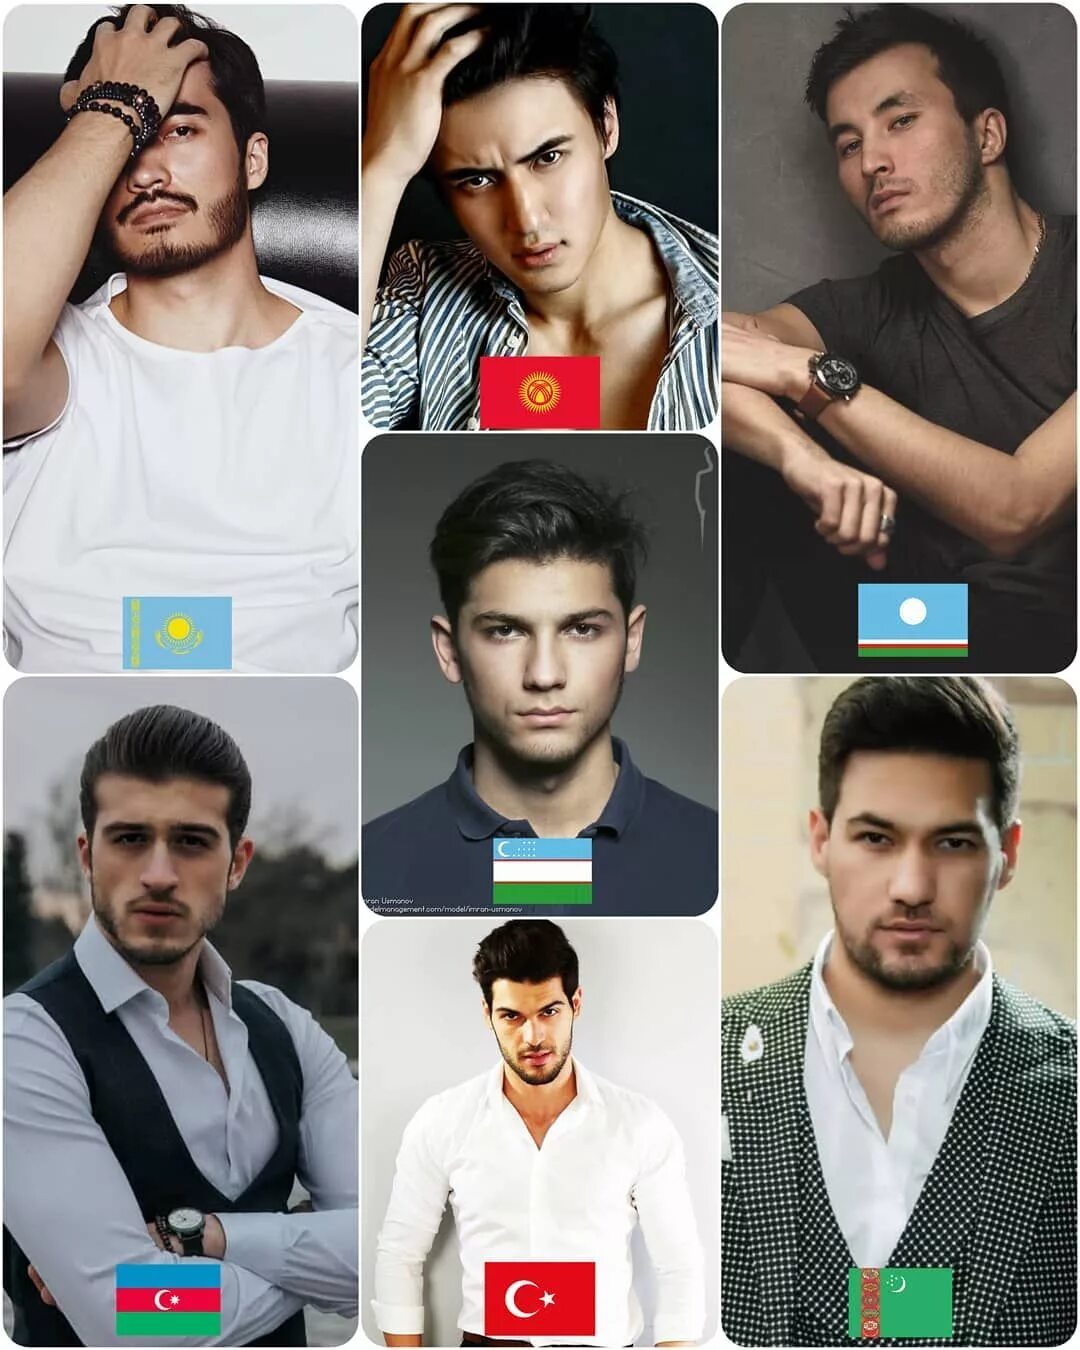 Как таджика отличить от узбека по внешности. Таджикская внешность мужчин. Внешность турков. Туркмены мужчины. Узбеки внешность.